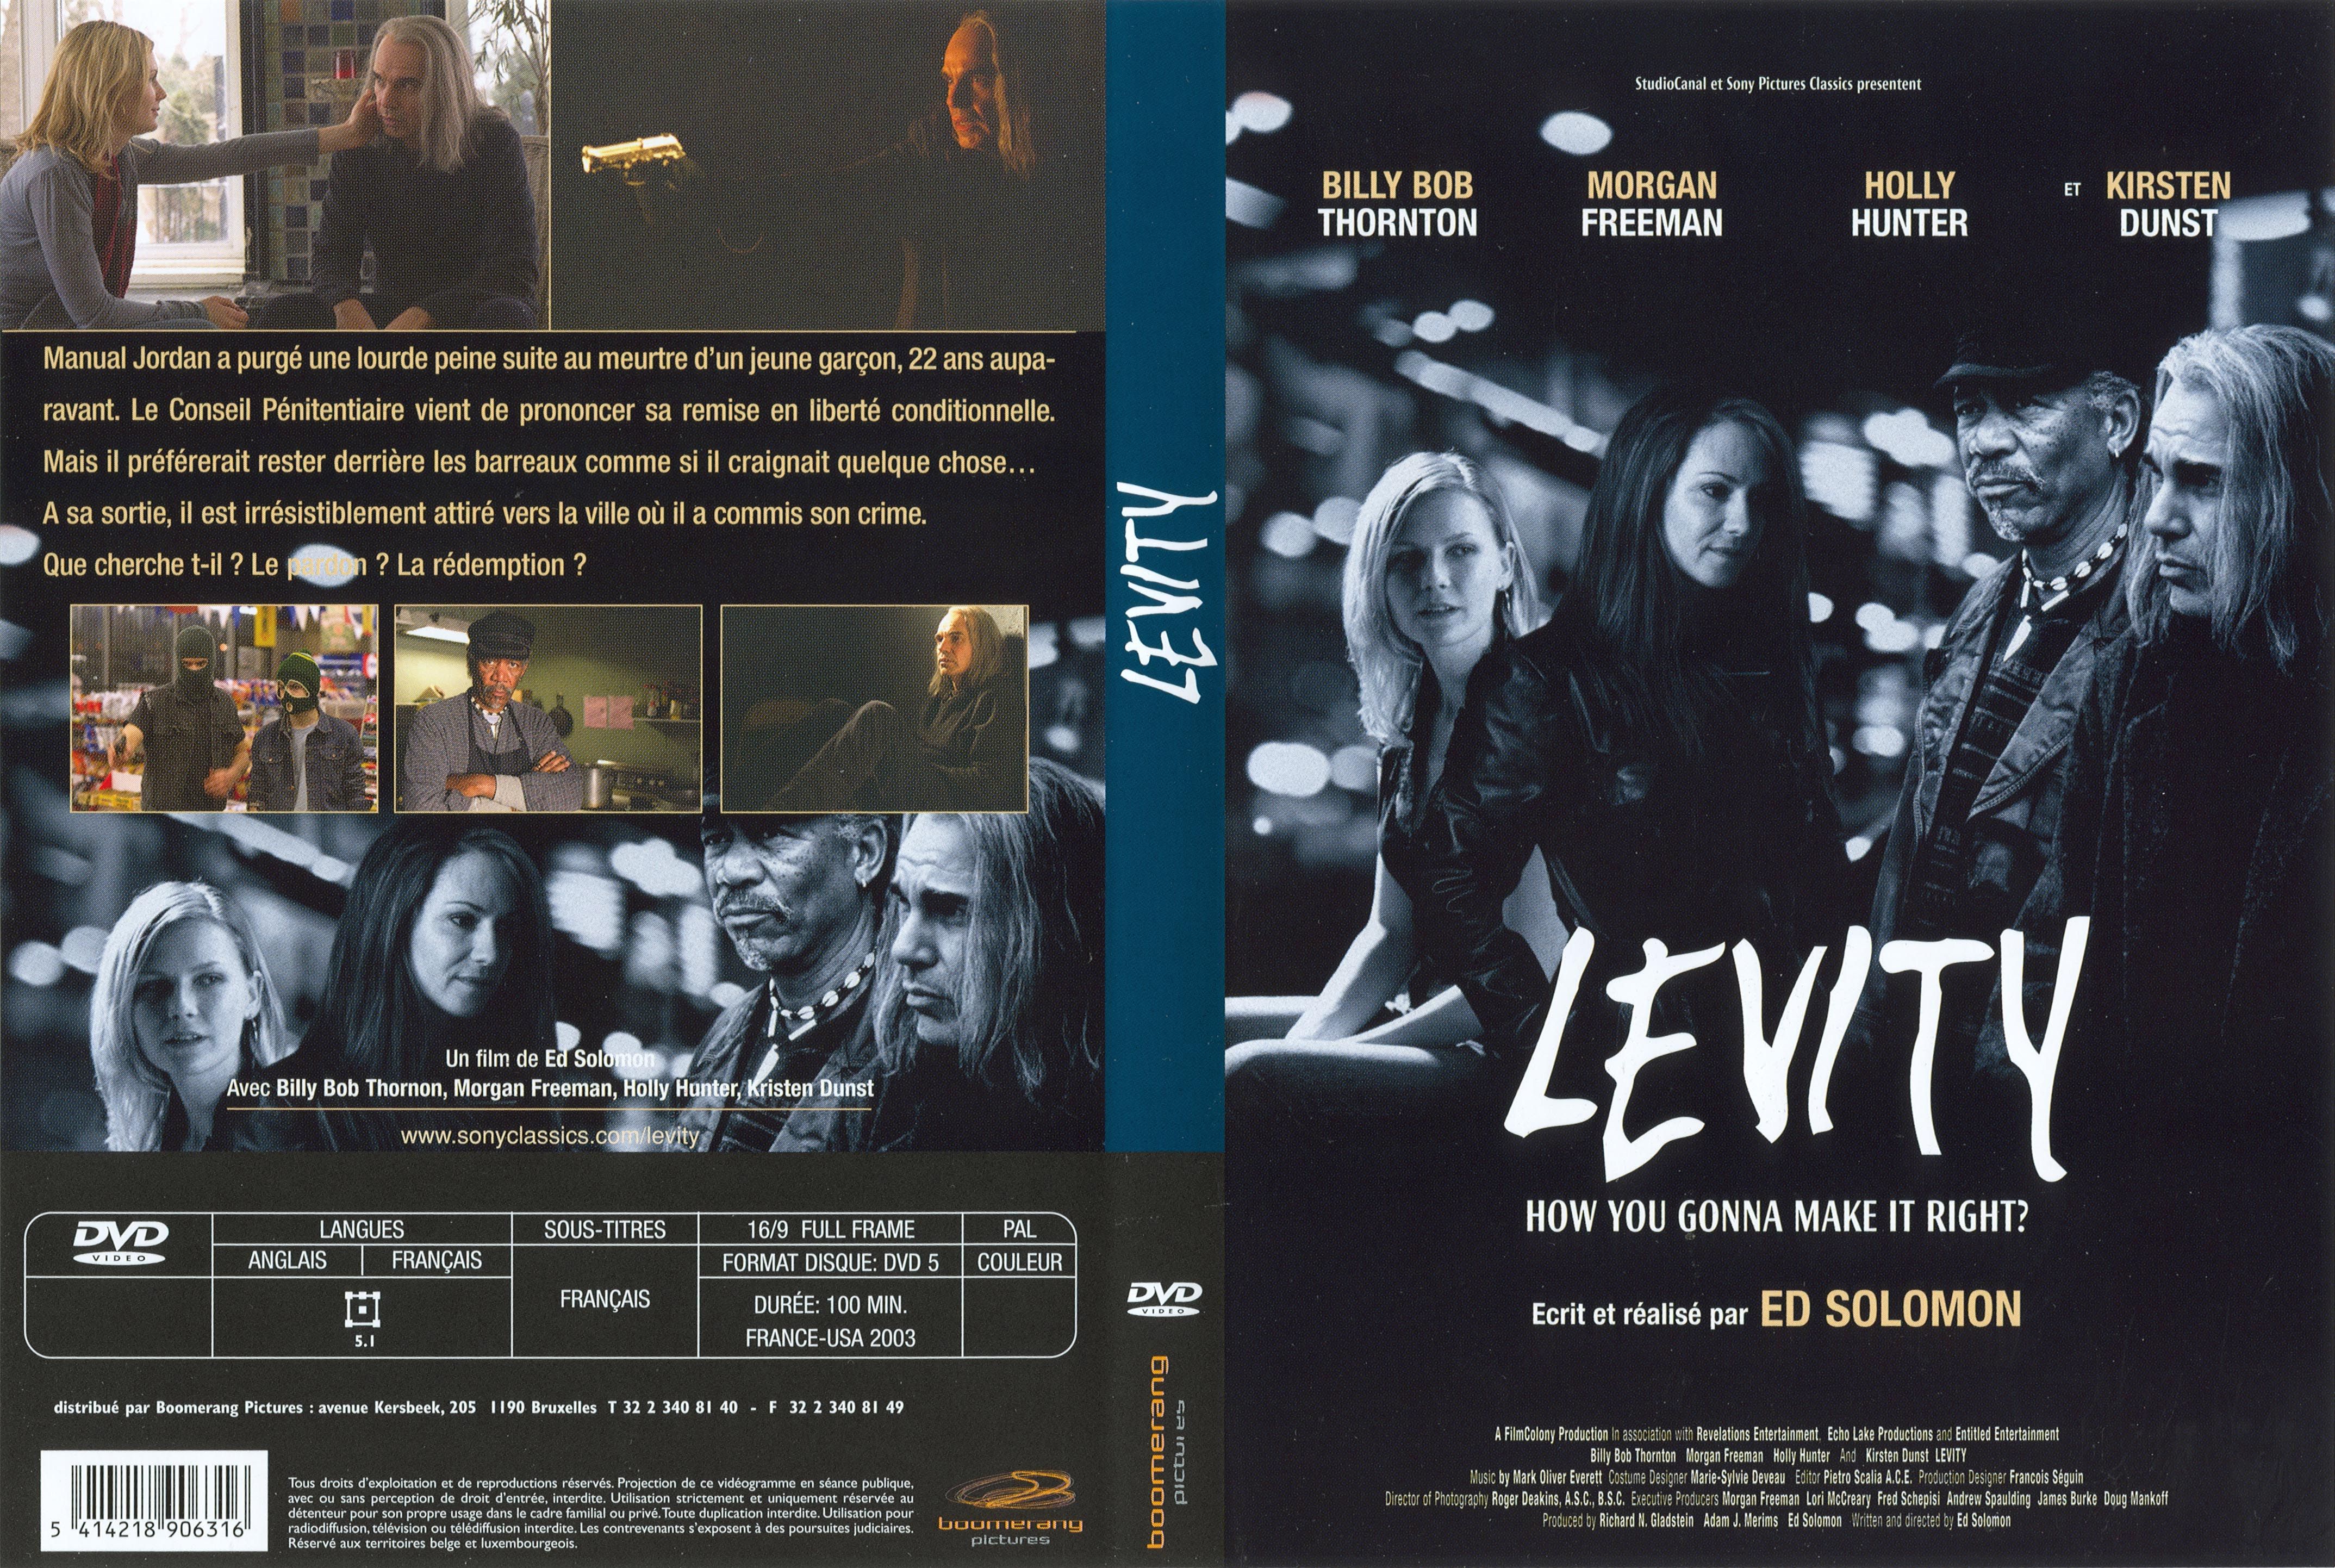 Jaquette DVD Levity